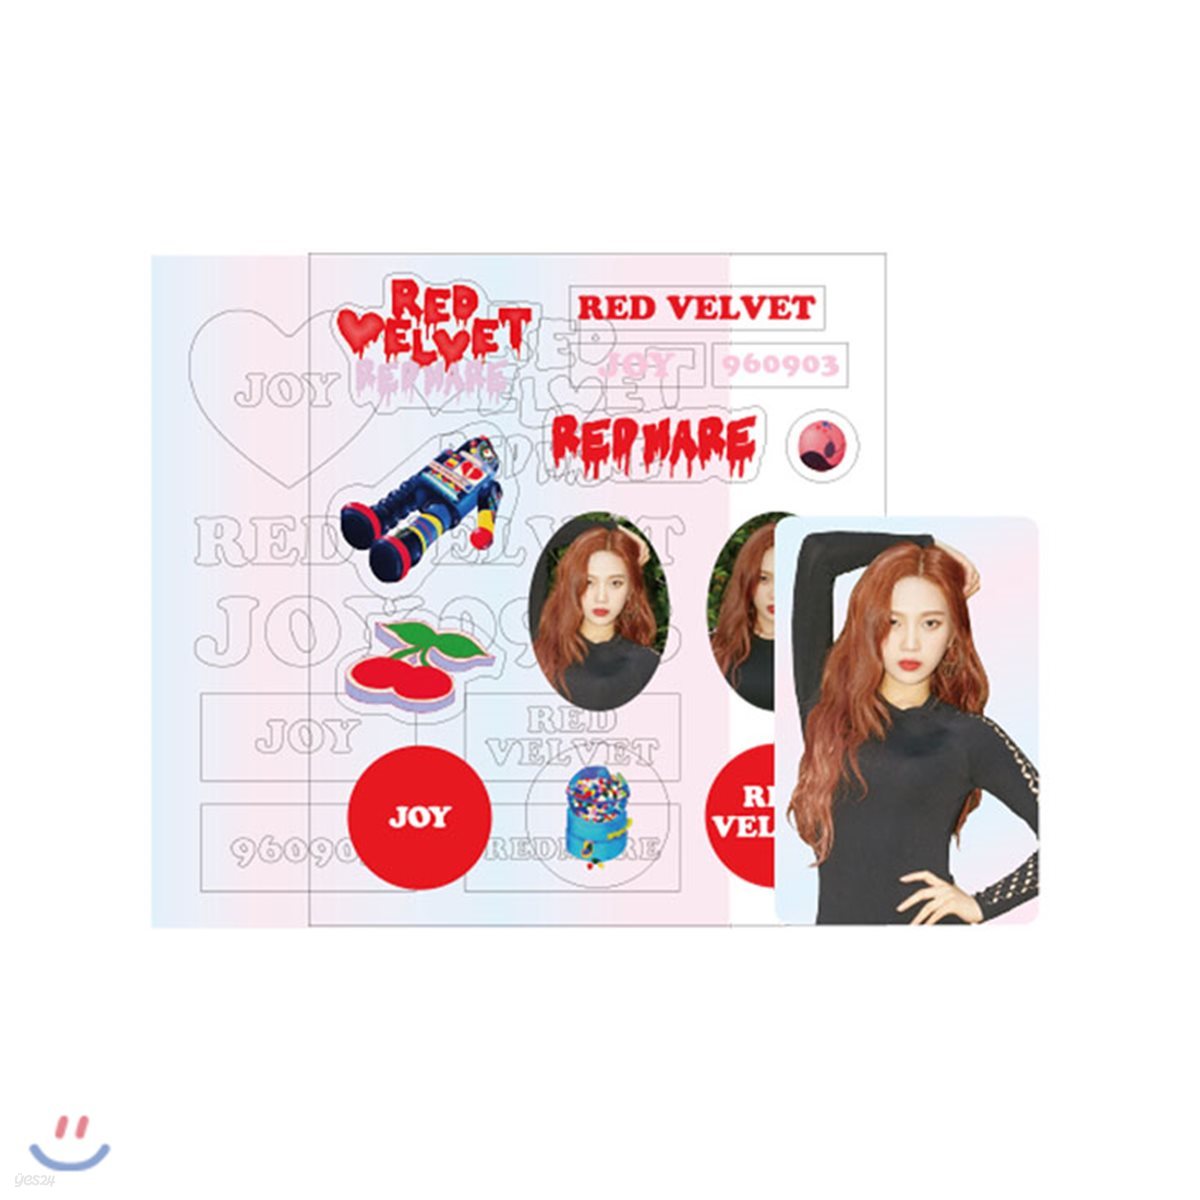 [예약판매]Red Velvet 2018 Redmare 조이 응원봉 데코 스티커 KIT